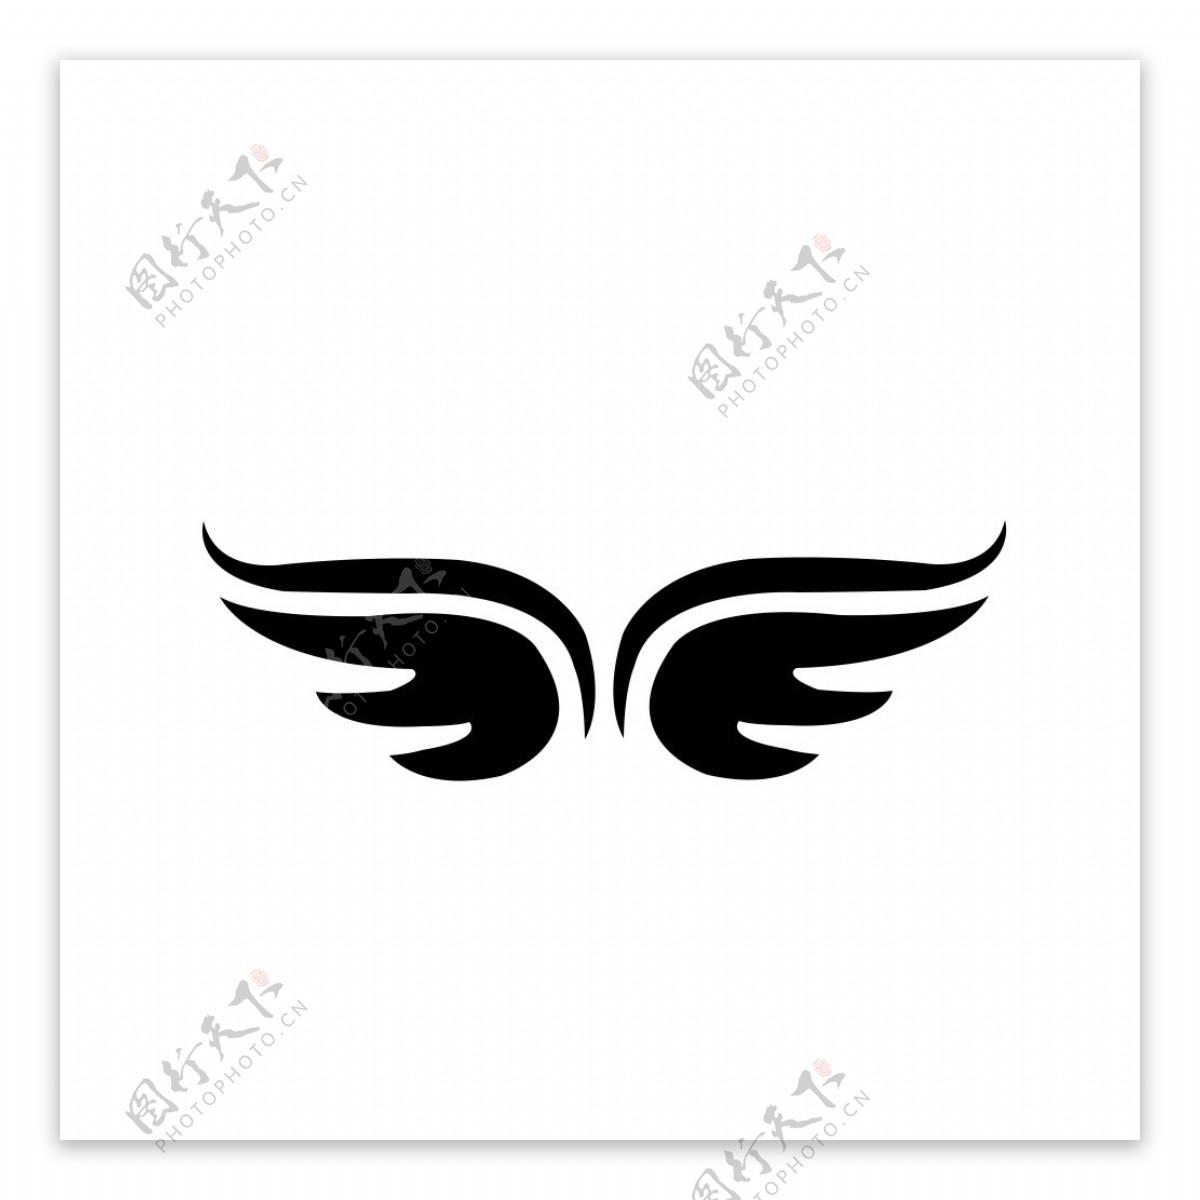 翅膀logo纹身素材橡皮章图片